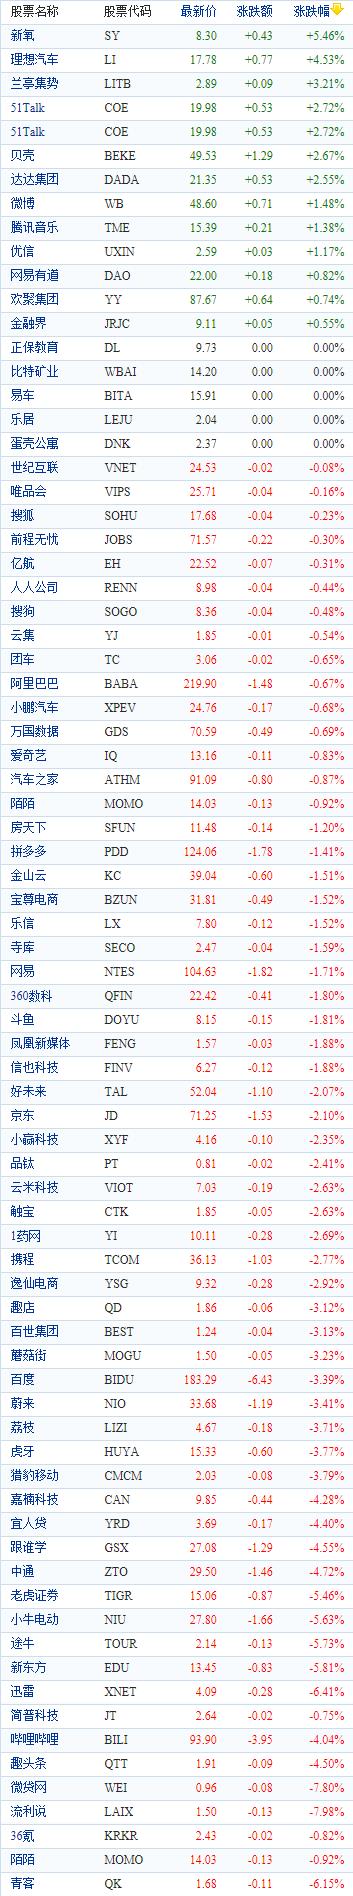 中国概念股周三收盘多数下跌 水滴续跌近10%四日累跌超40%